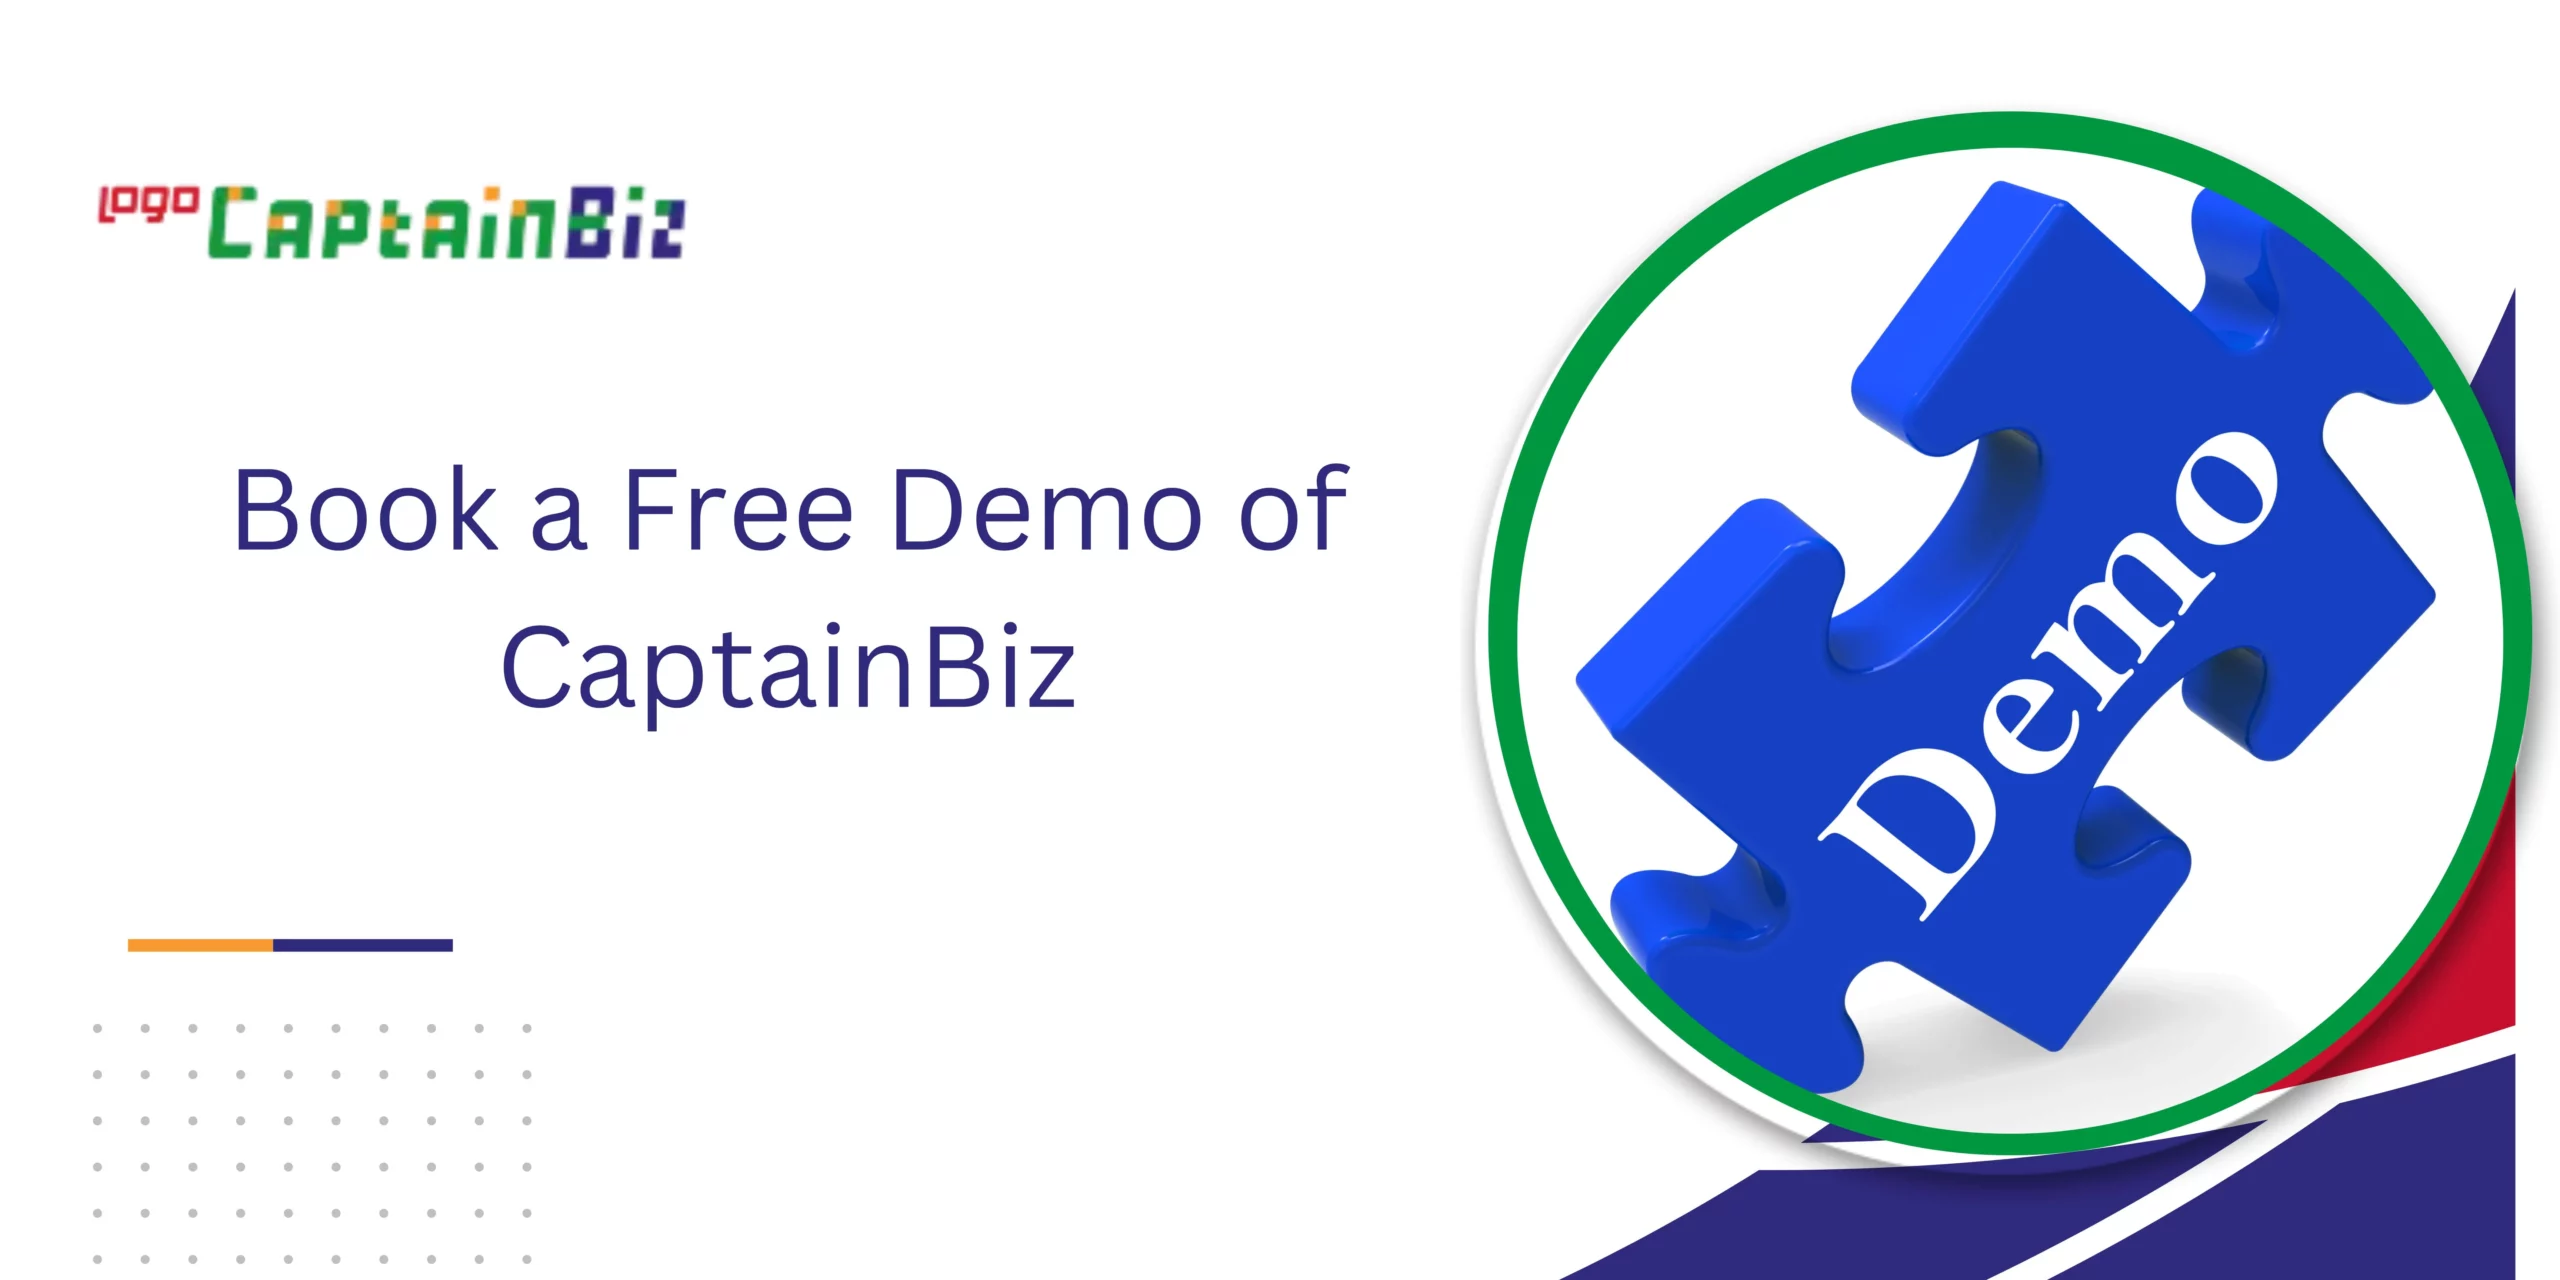 CaptainBiz: Book a Free Demo of CaptainBiz